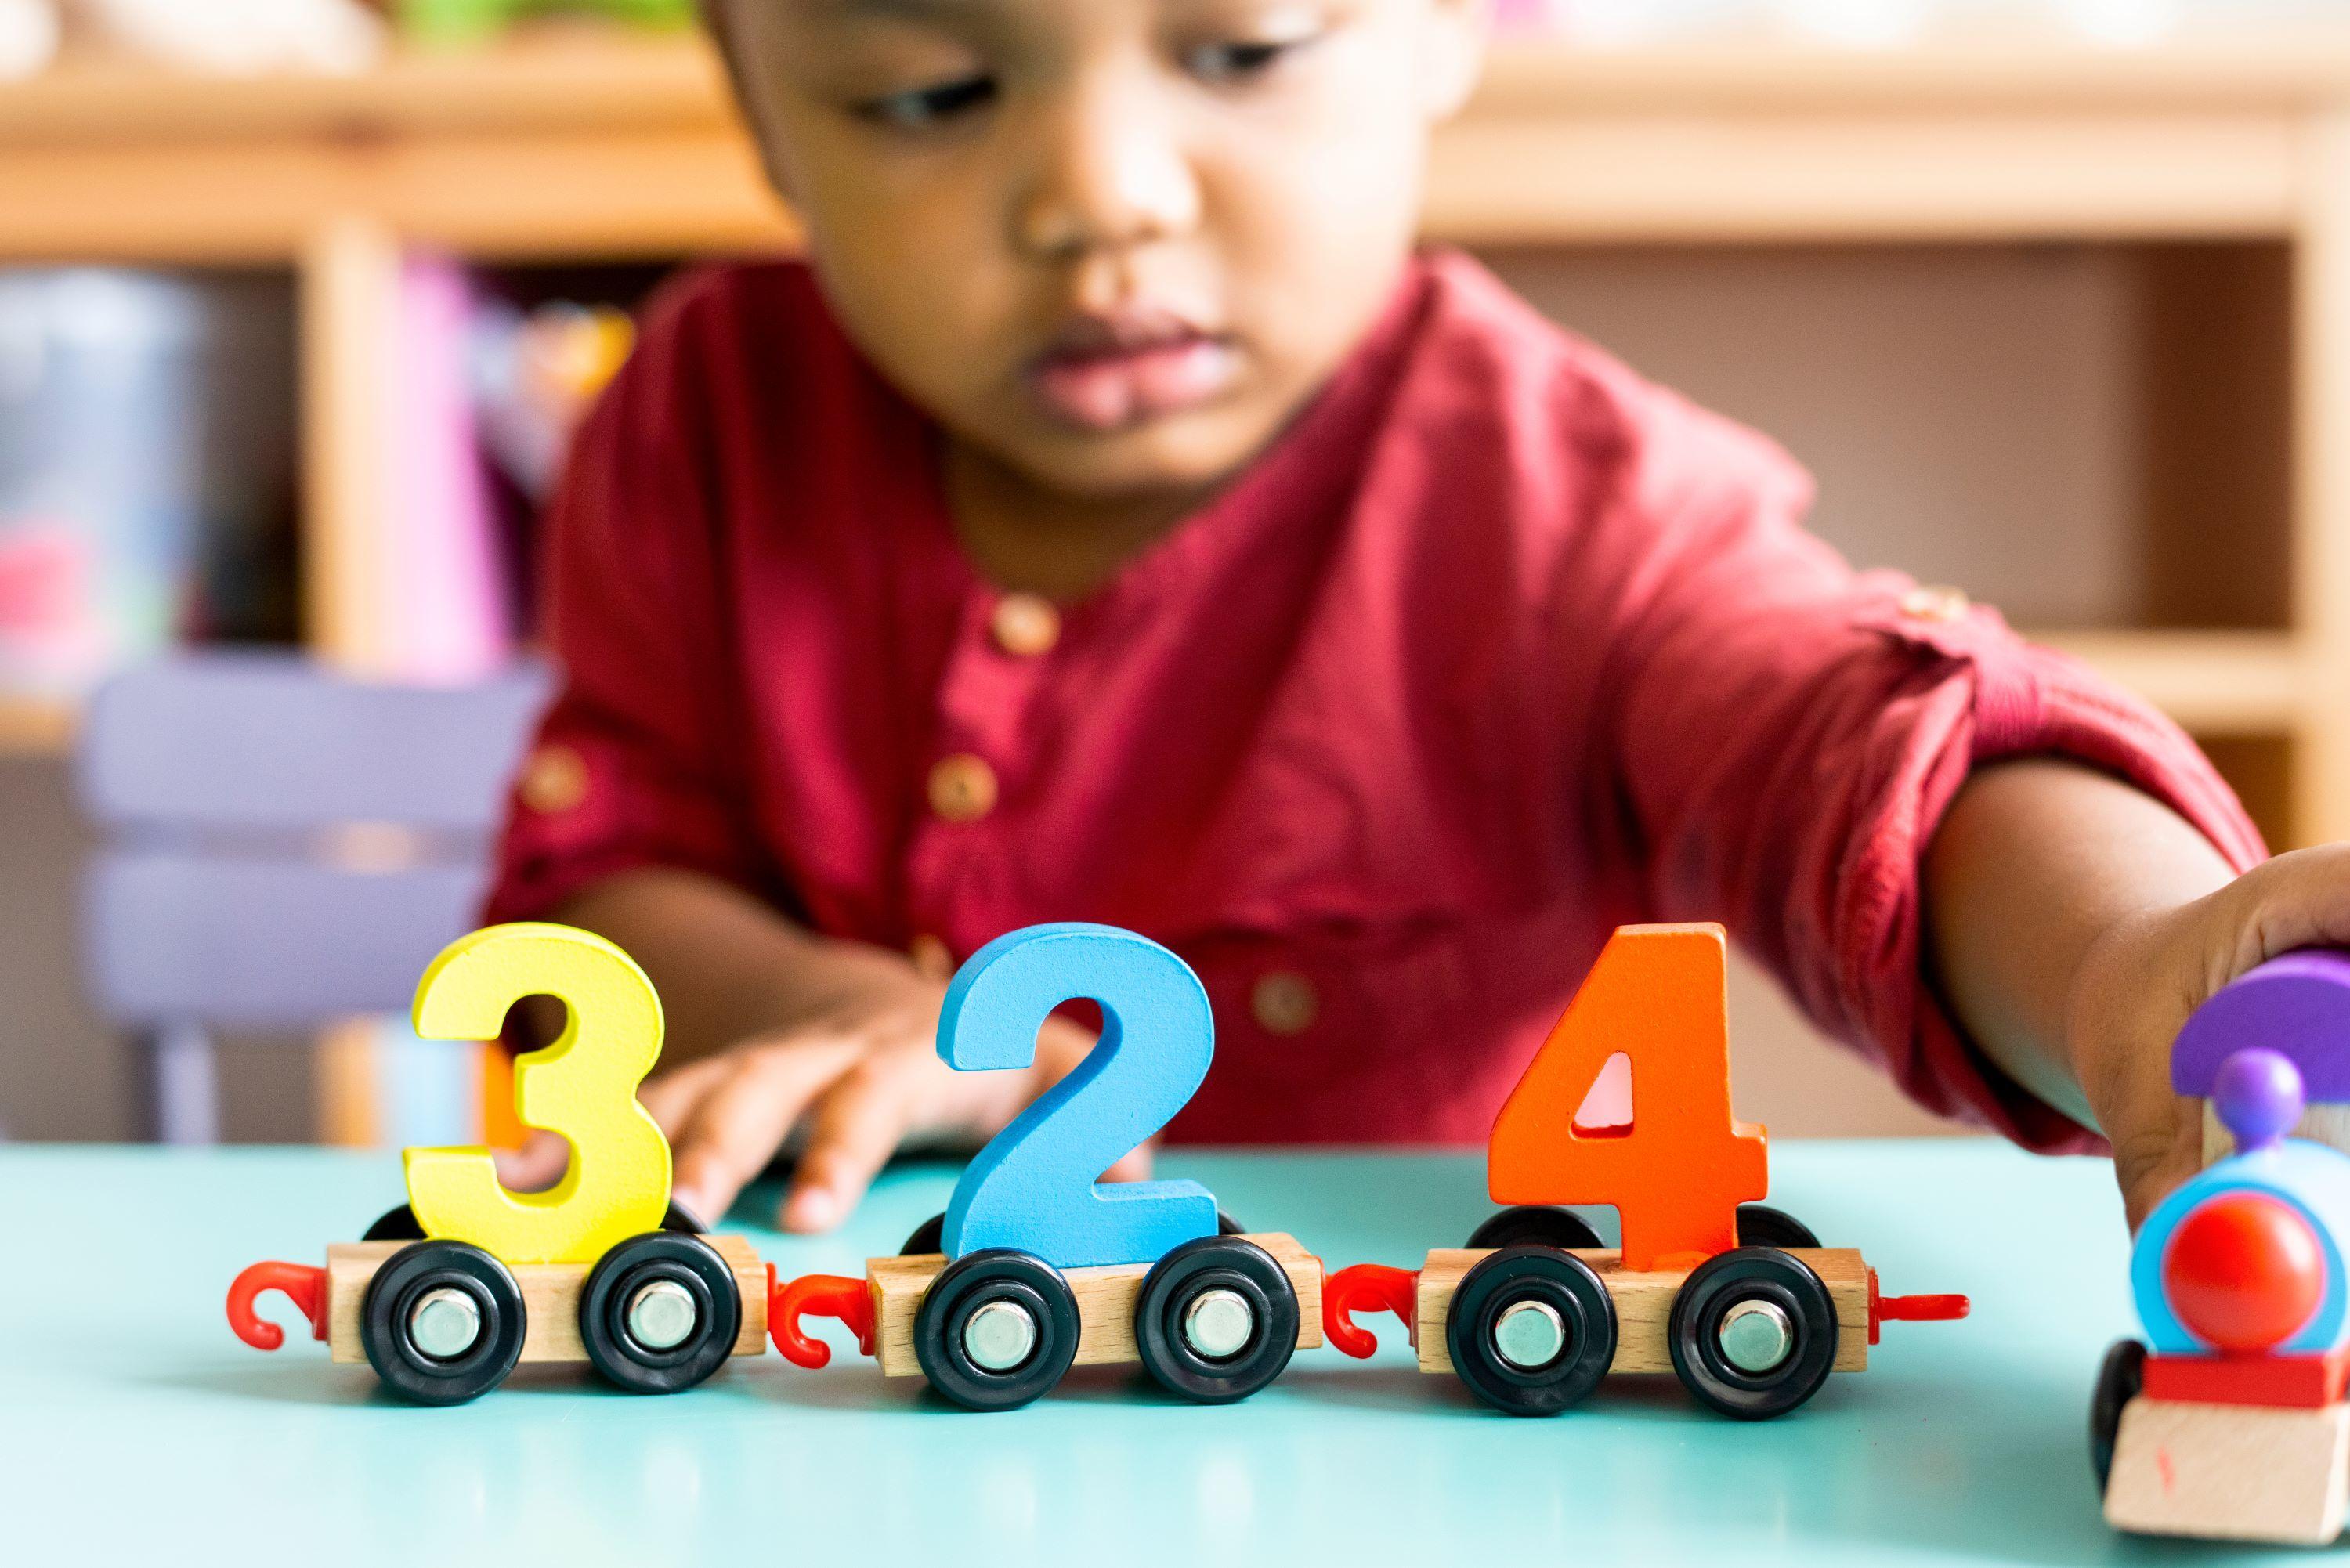 Lire article À seulement 2 ans, ce bébé arrive à résoudre des problèmes de maths